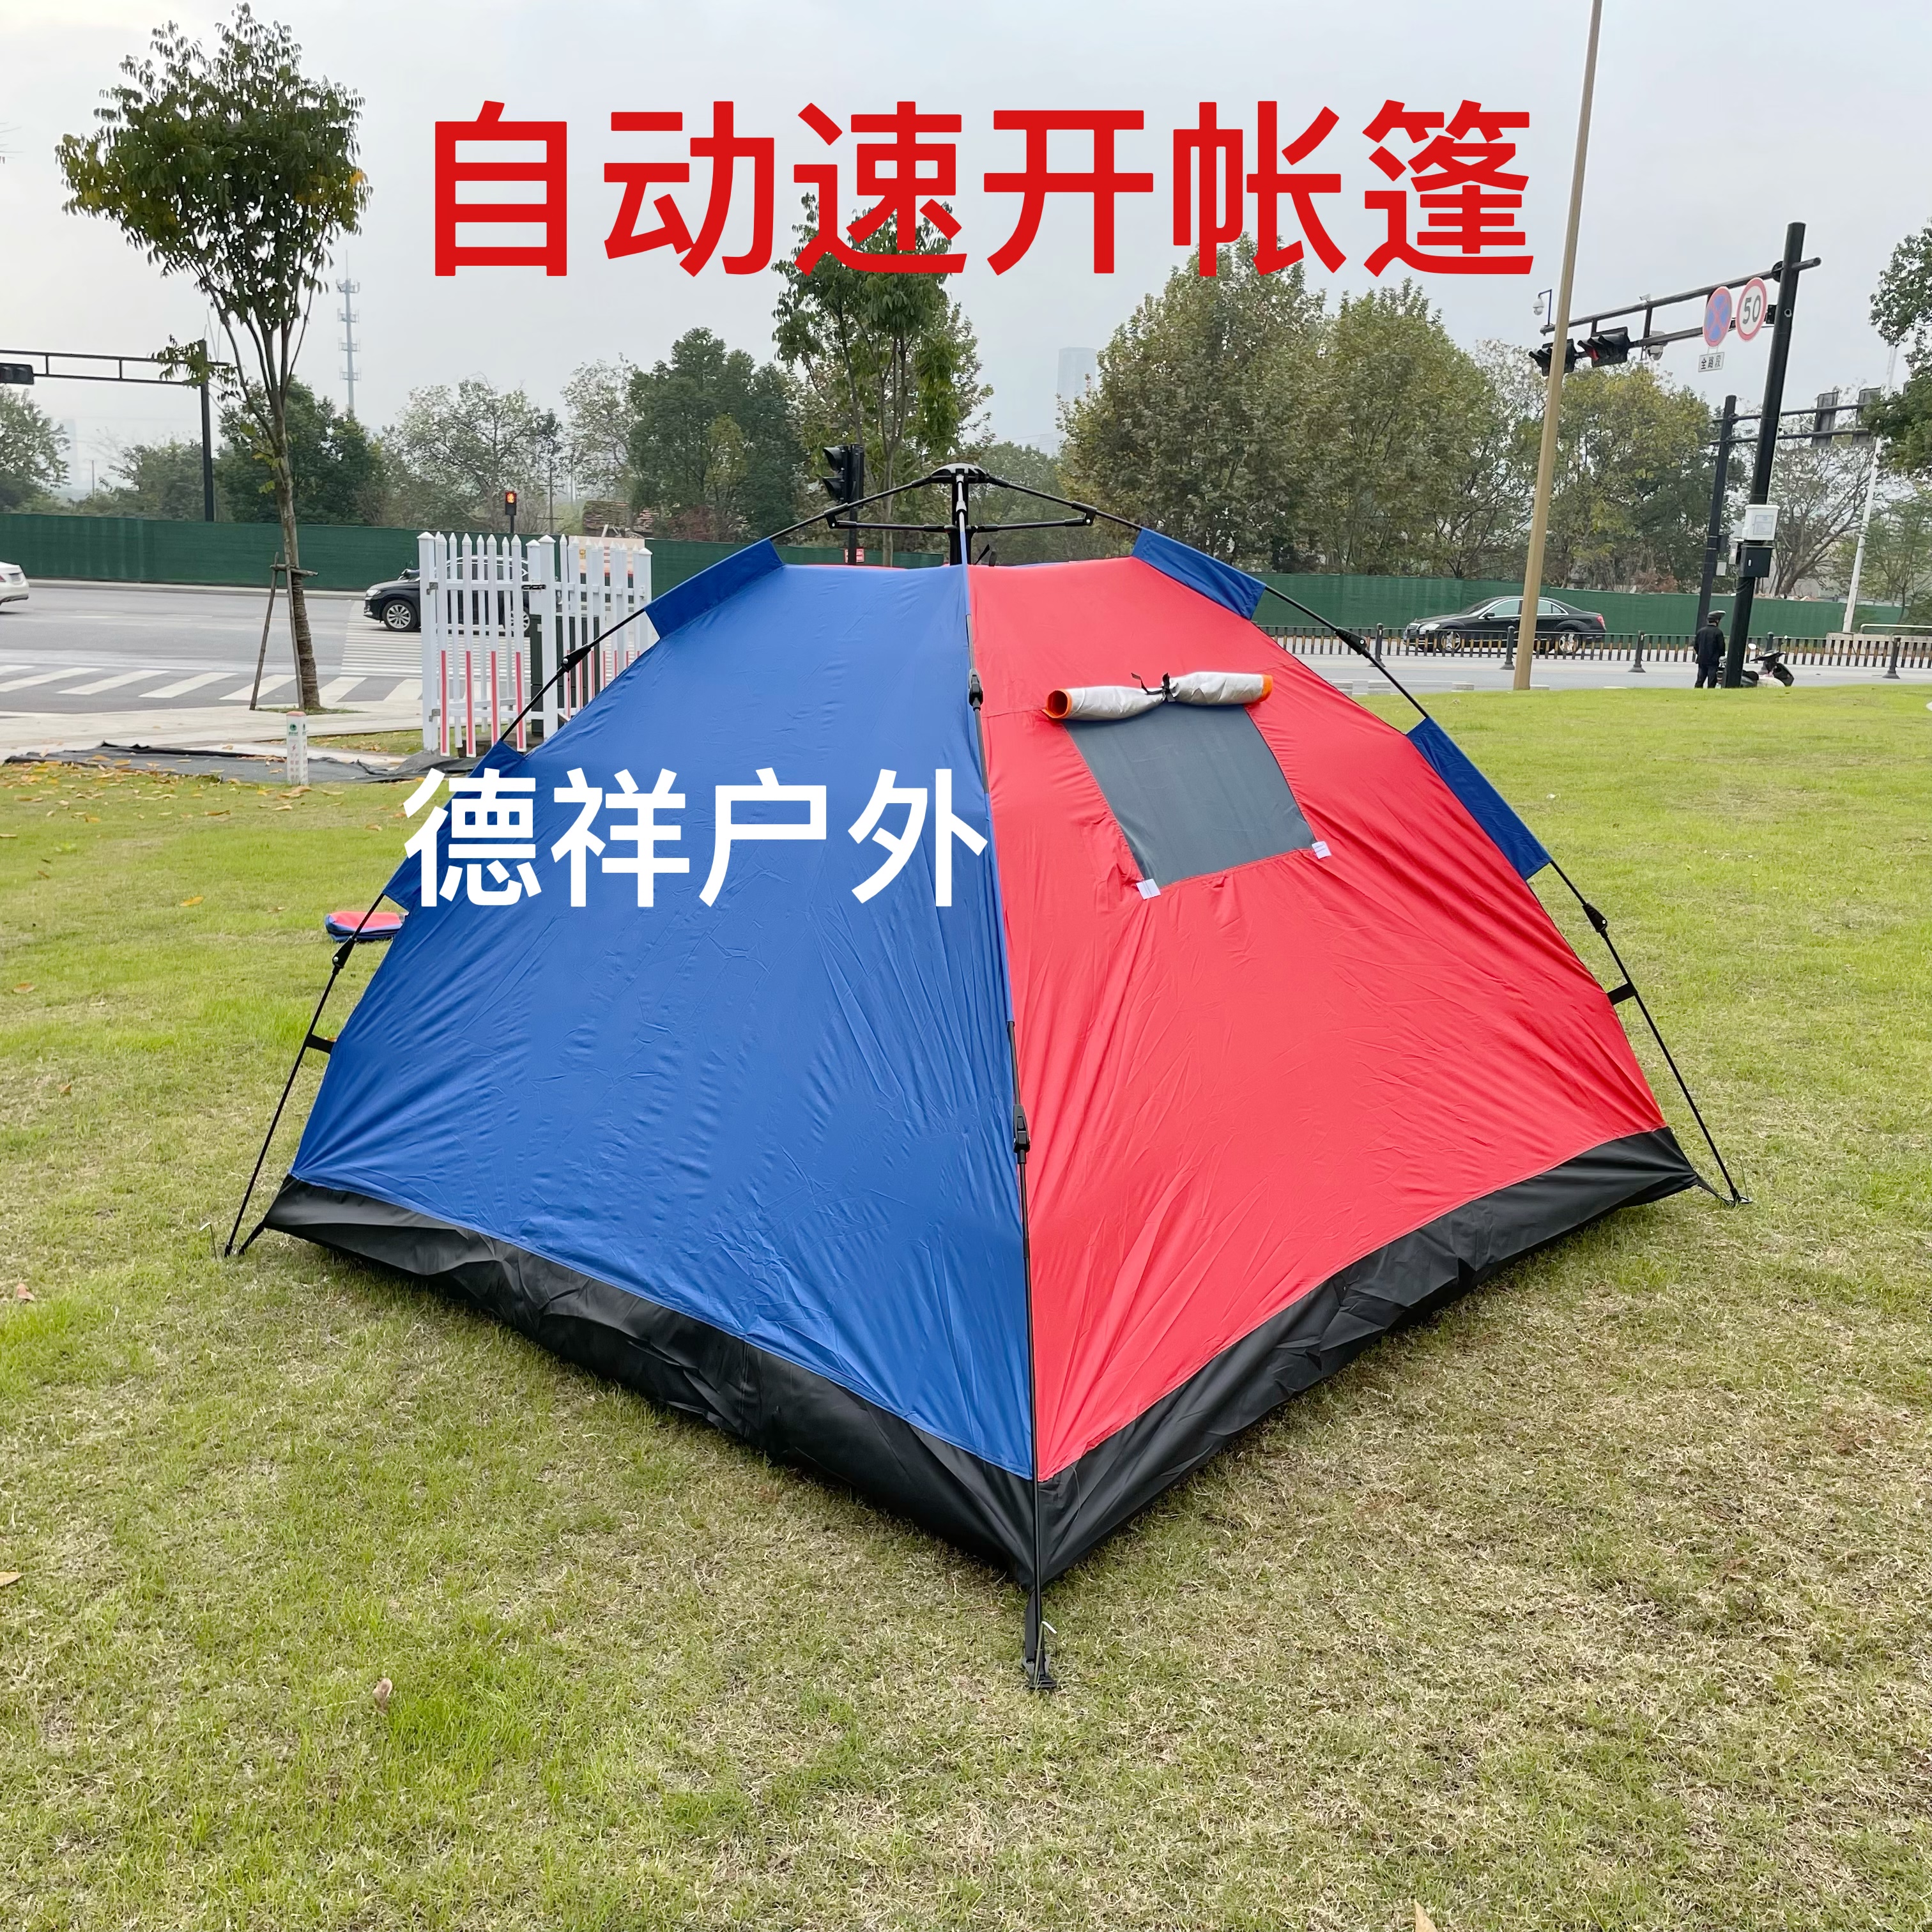 野营自动帐篷产品图